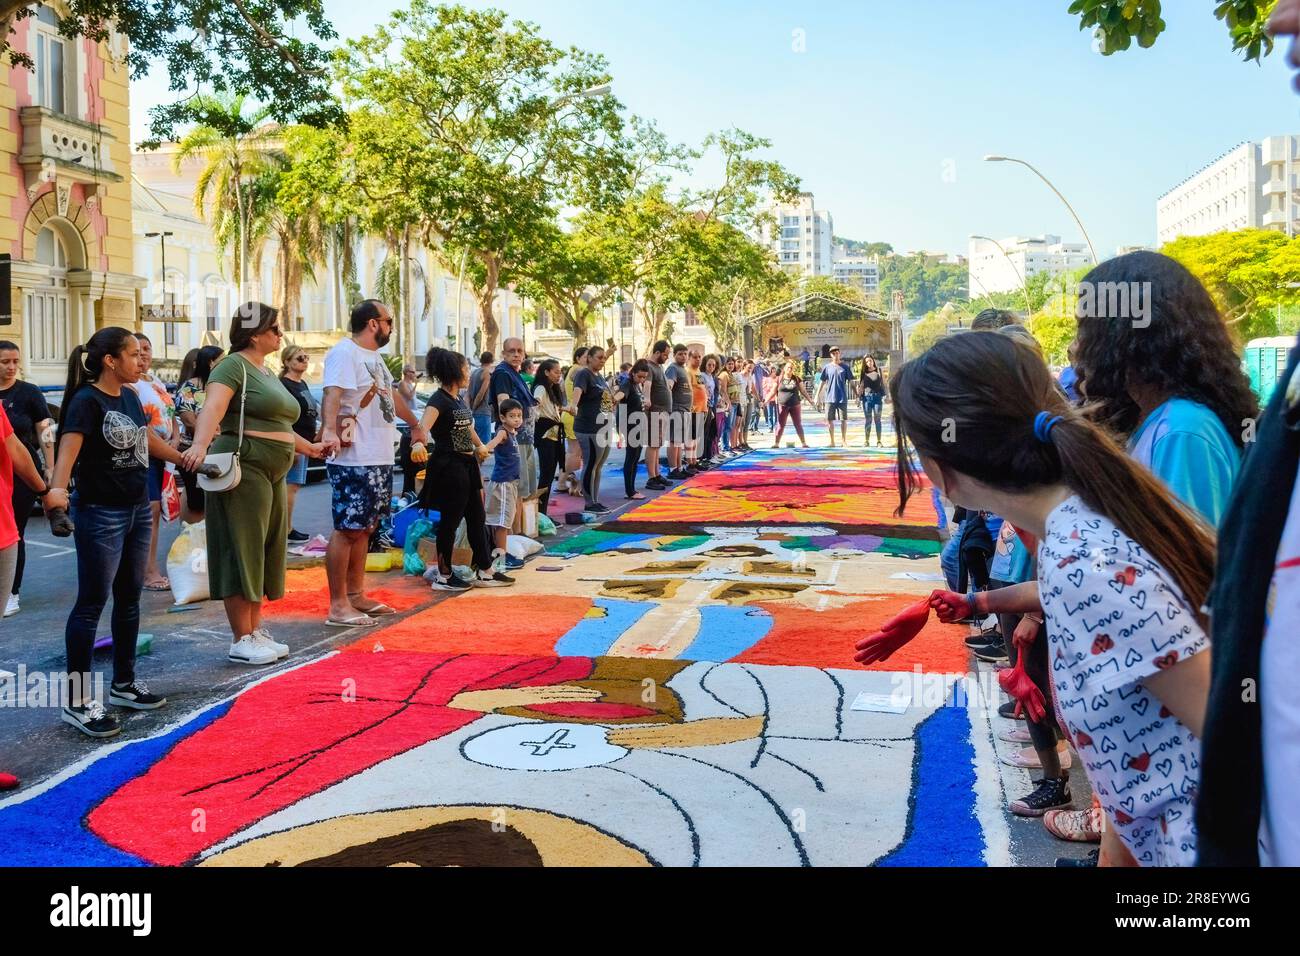 Vie urbaine pendant le Festival annuel de tapis de sable de Sao Goncalo. L'événement religieux est une tradition et une attraction touristique. Banque D'Images